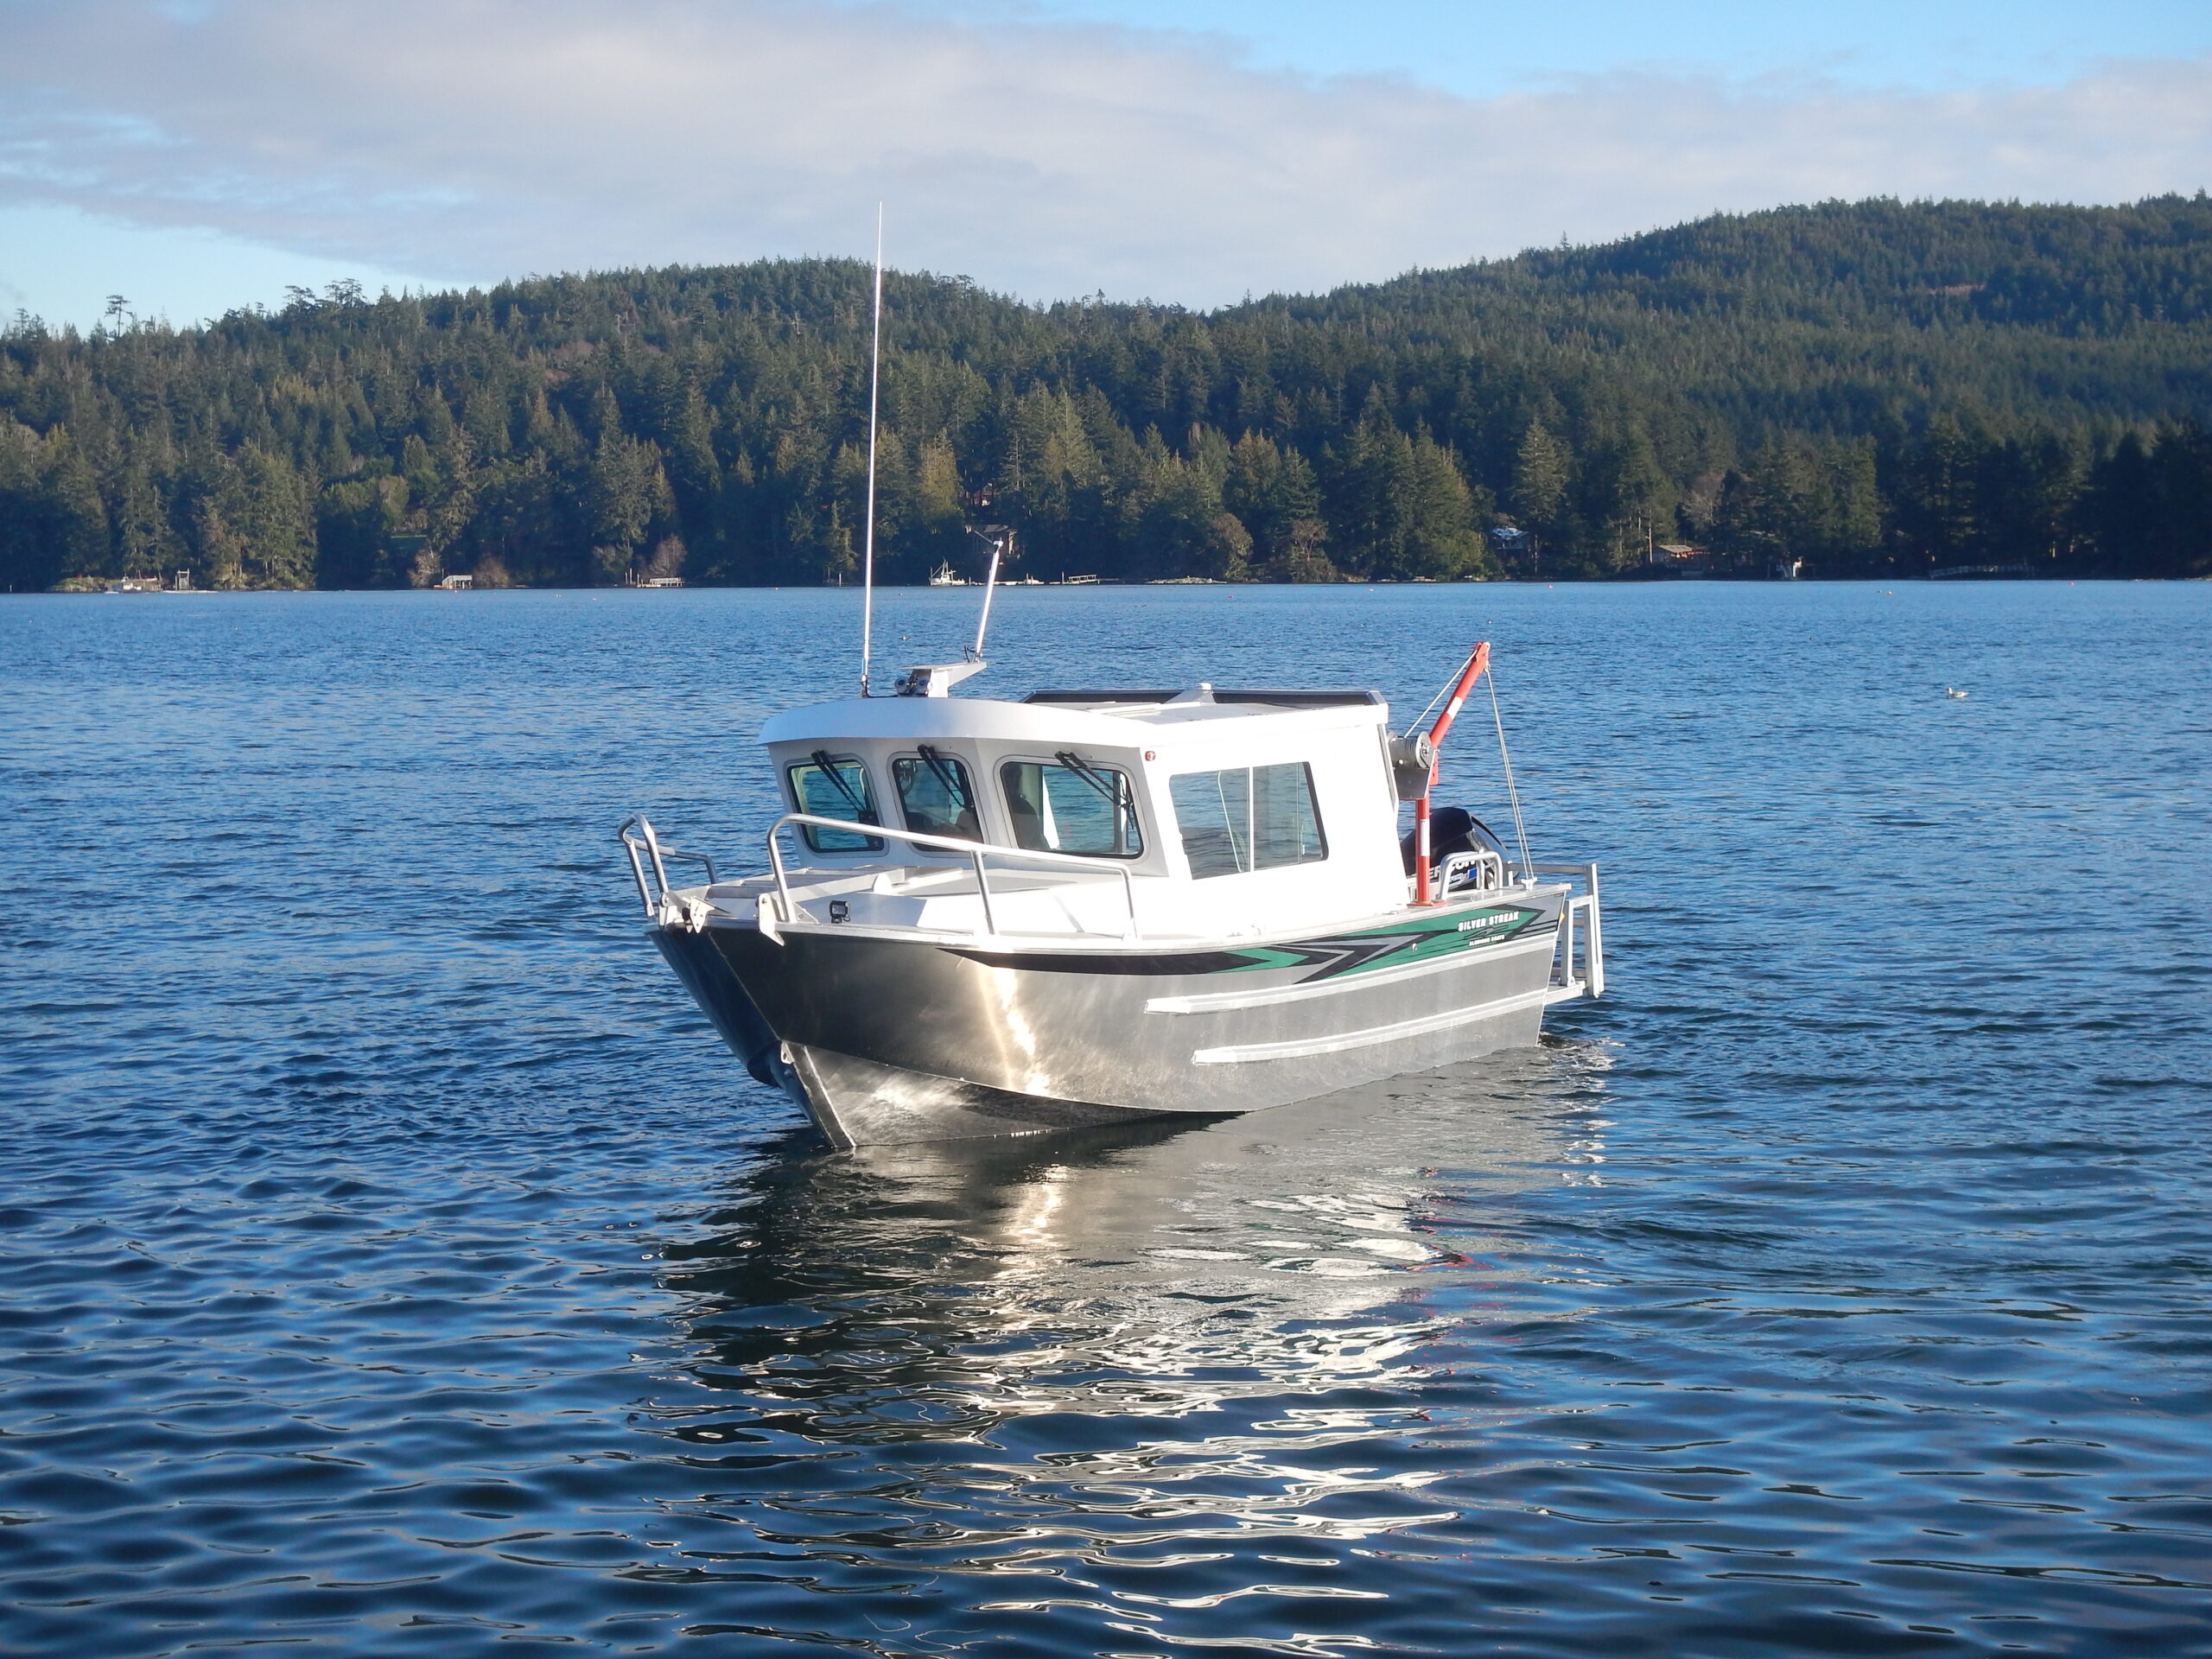 24' Swiftsure - Aluminum Cabin Boat by Silver Streak Boats